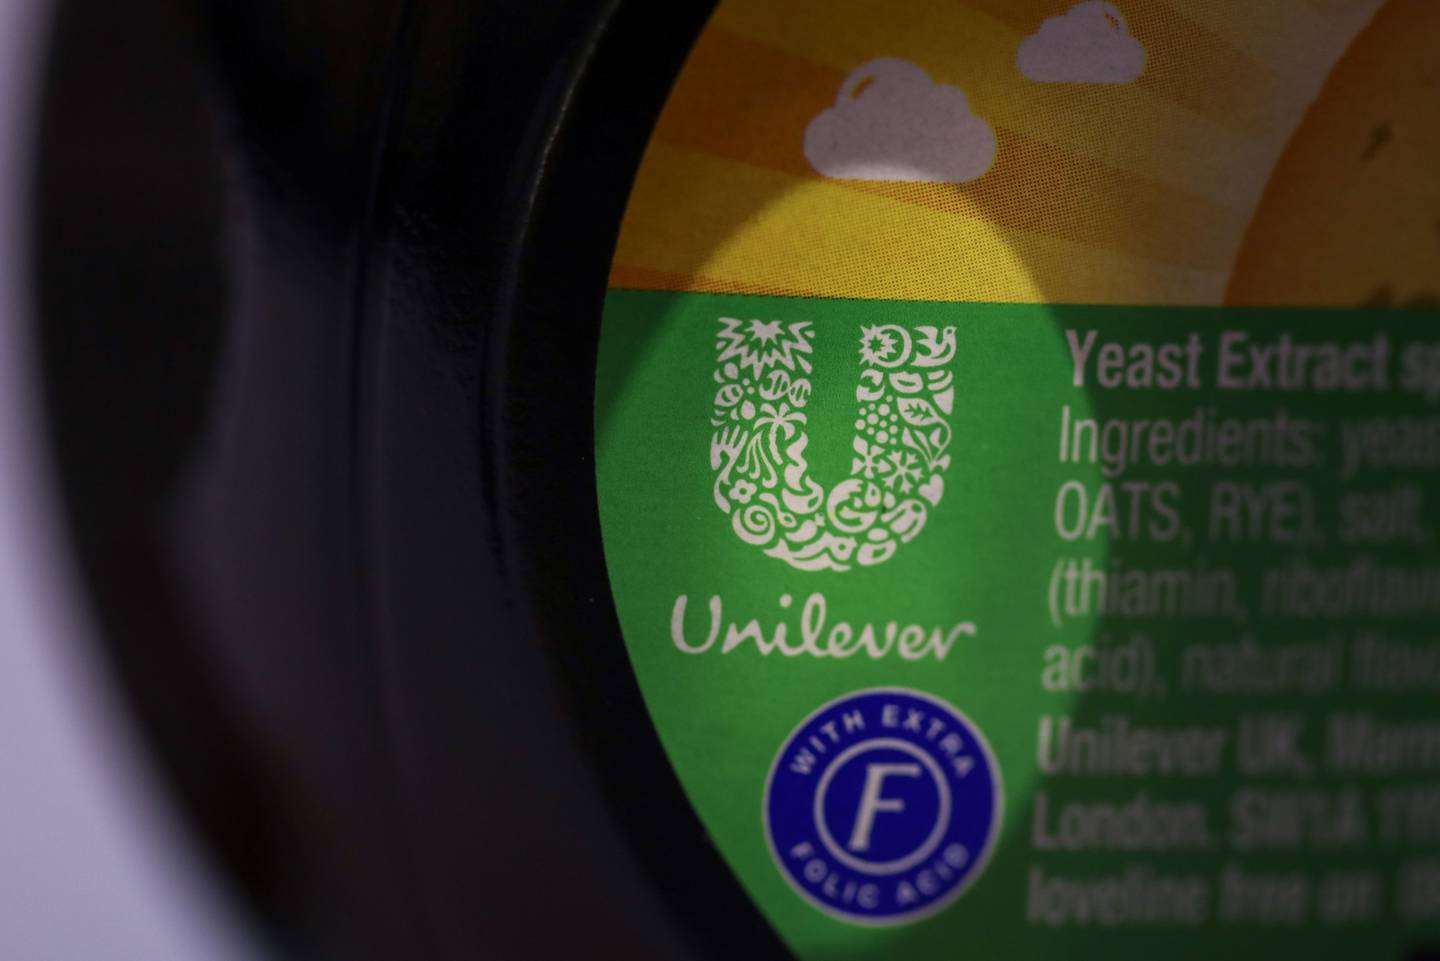 Unilever sigue interesada y podría volver con una nueva oferta, aunque no se ha tomado una decisión final, dijeron las personas.